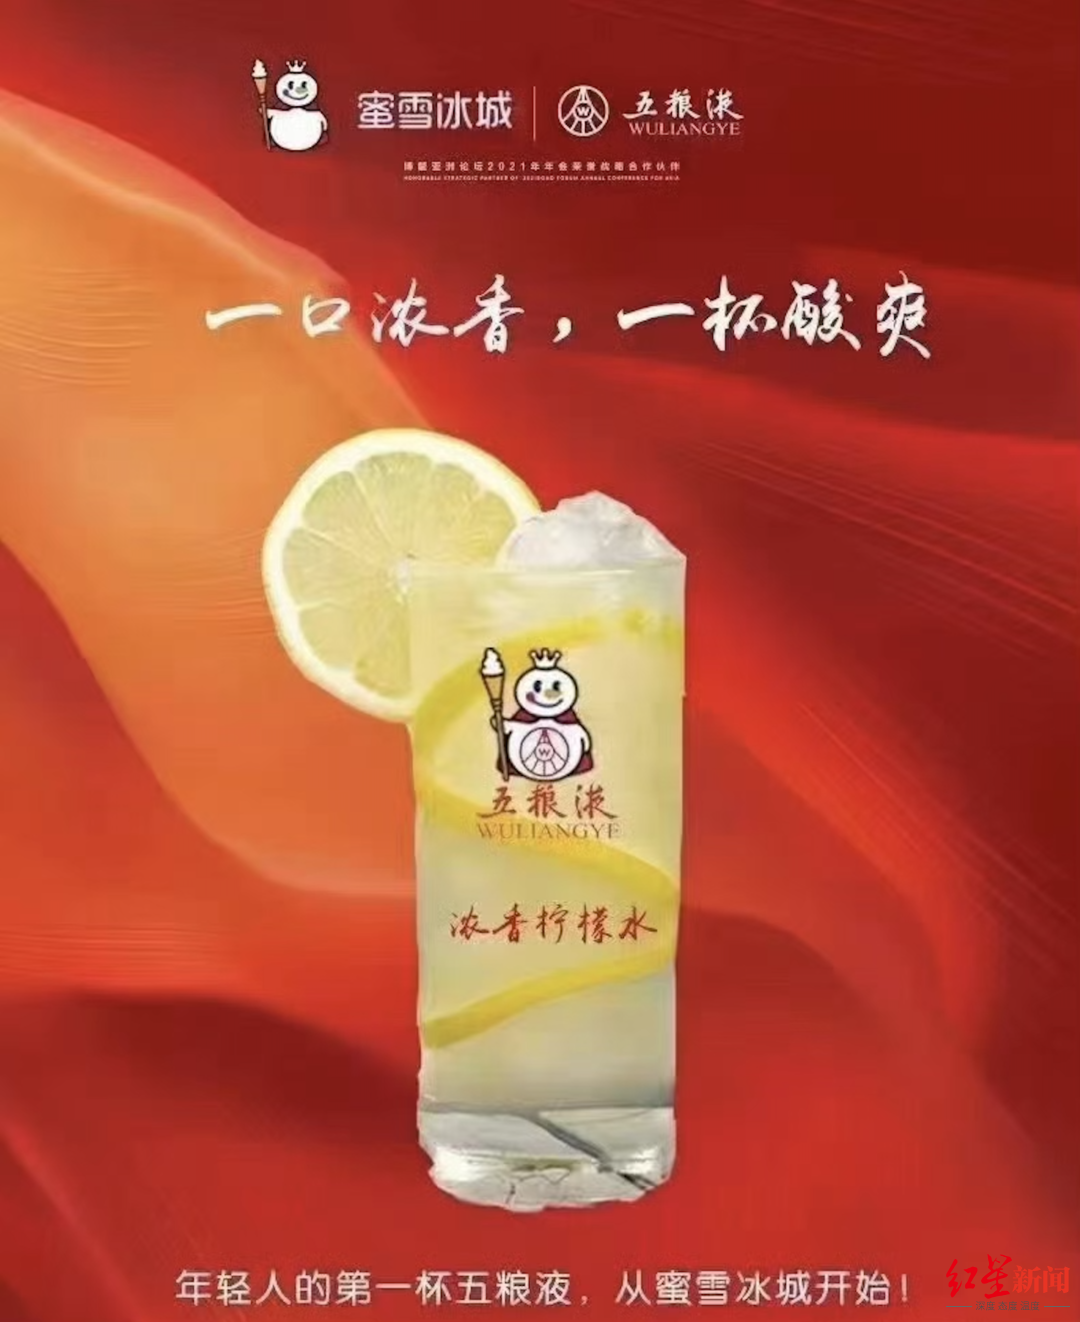 网传蜜雪冰城与五粮液合作的产品海报 图源：新浪微博